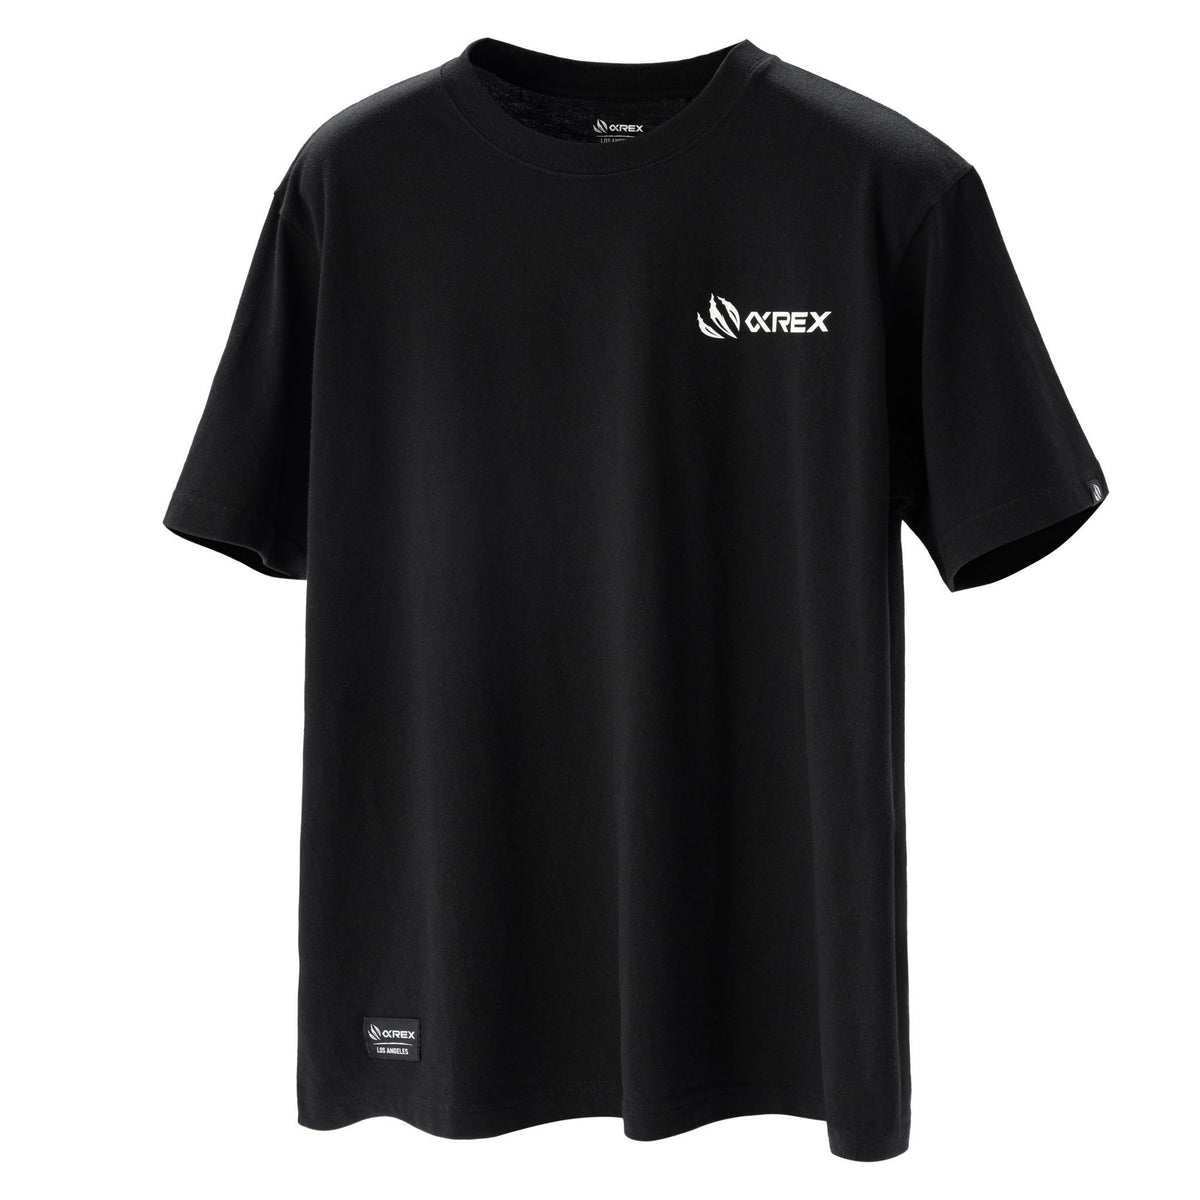 AlphaRex Initial Tee T-Shirt